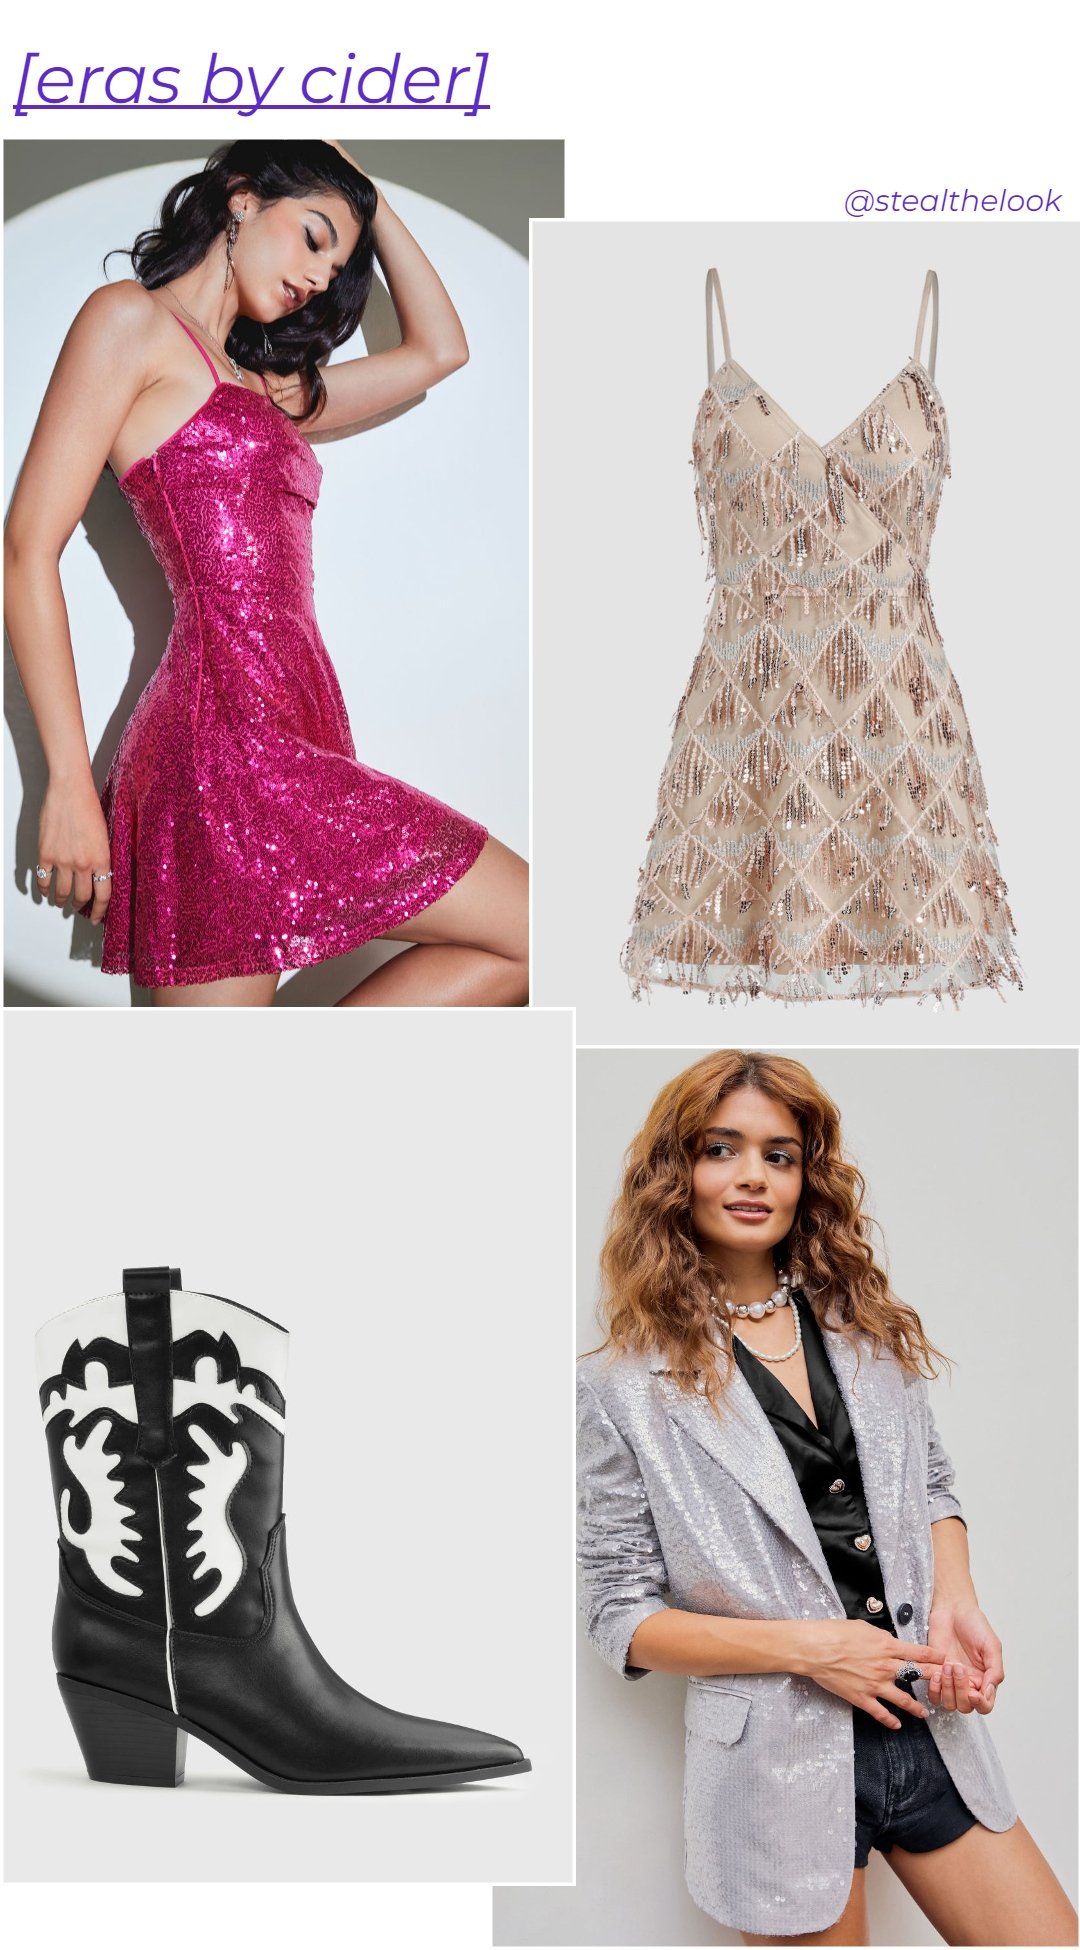 'Eras' by Cider - roupas diversas - lançamentos de moda - verão - colagem de imagens - https://stealthelook.com.br